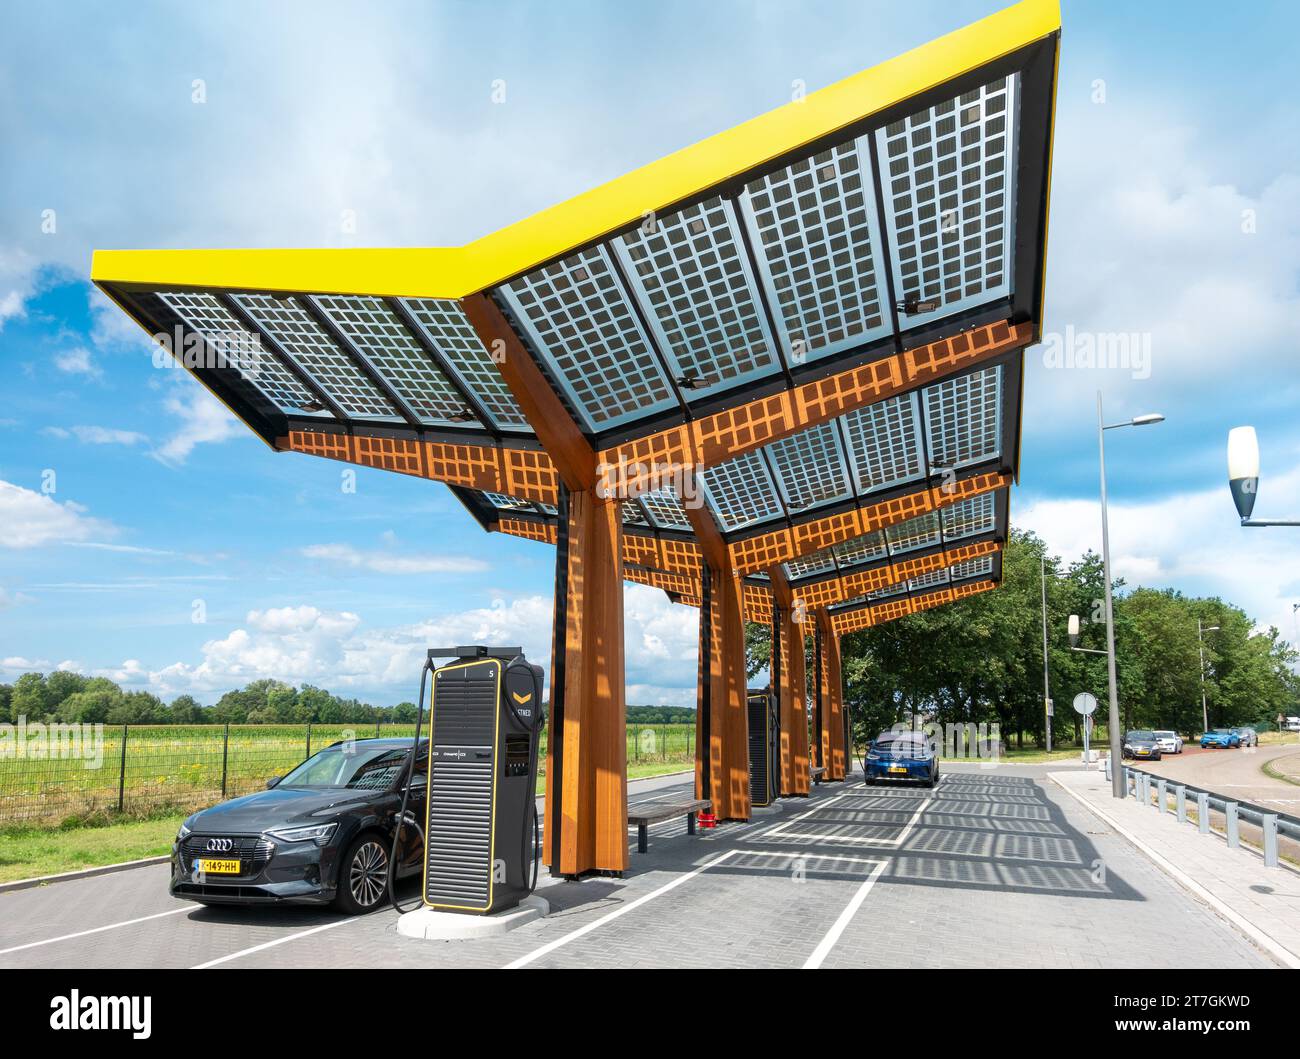 Borne de recharge de voiture électrique le long de l'autoroute A2. Chargeur rapide Fastned. Panneaux solaires intégrés dans la structure du toit. Pays-Bas Banque D'Images